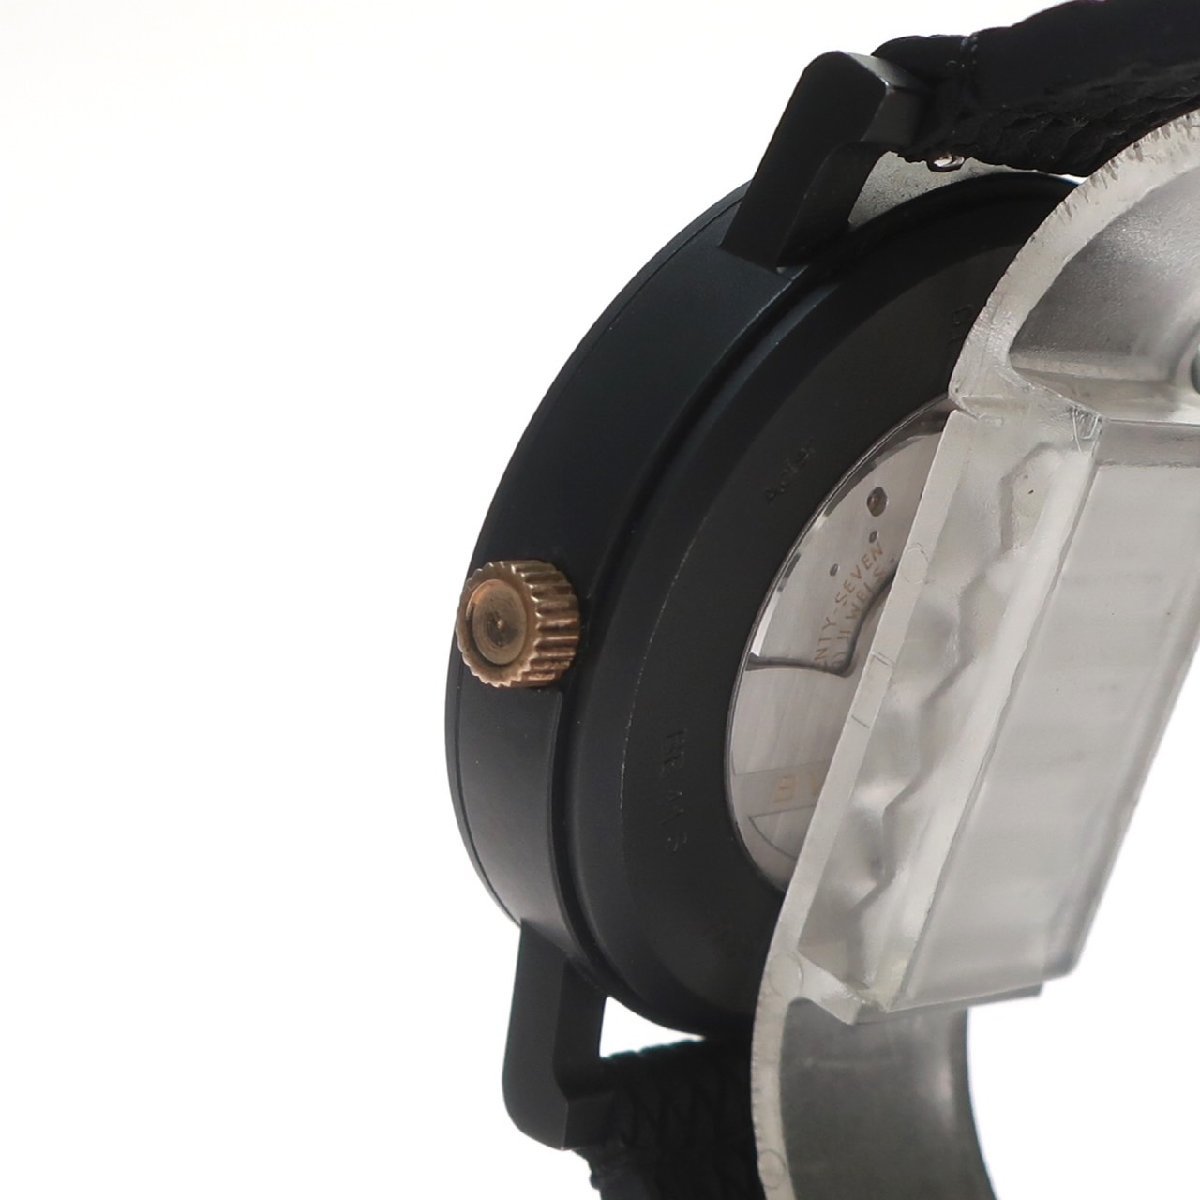 [ превосходный товар ]BVLGARI BVLGARY BVLGARY BVLGARY Solotempo 102929 Date нержавеющая сталь самозаводящиеся часы черный циферблат чёрный мужские наручные часы 